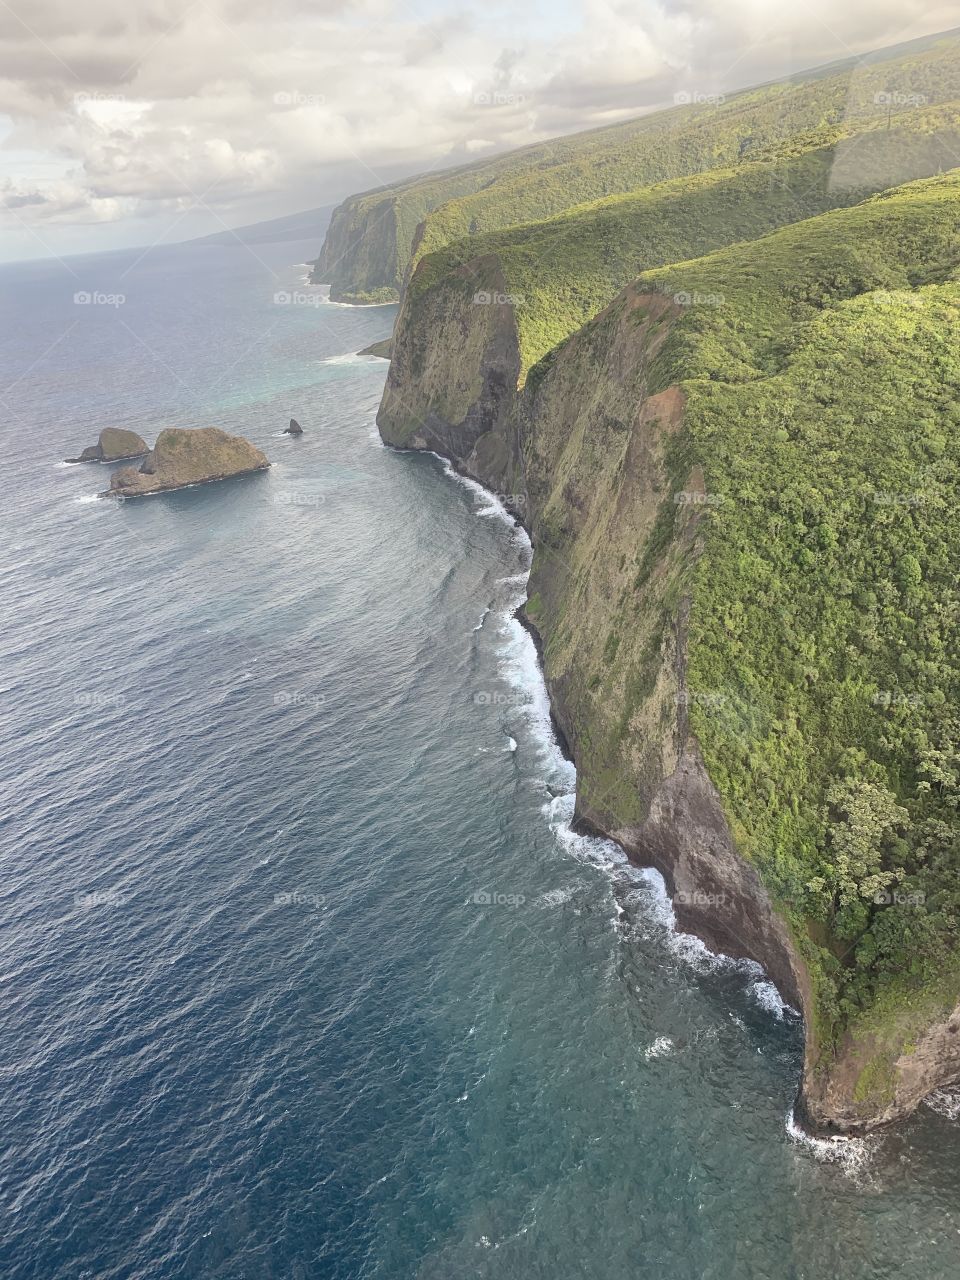 Hawaiian Island coast